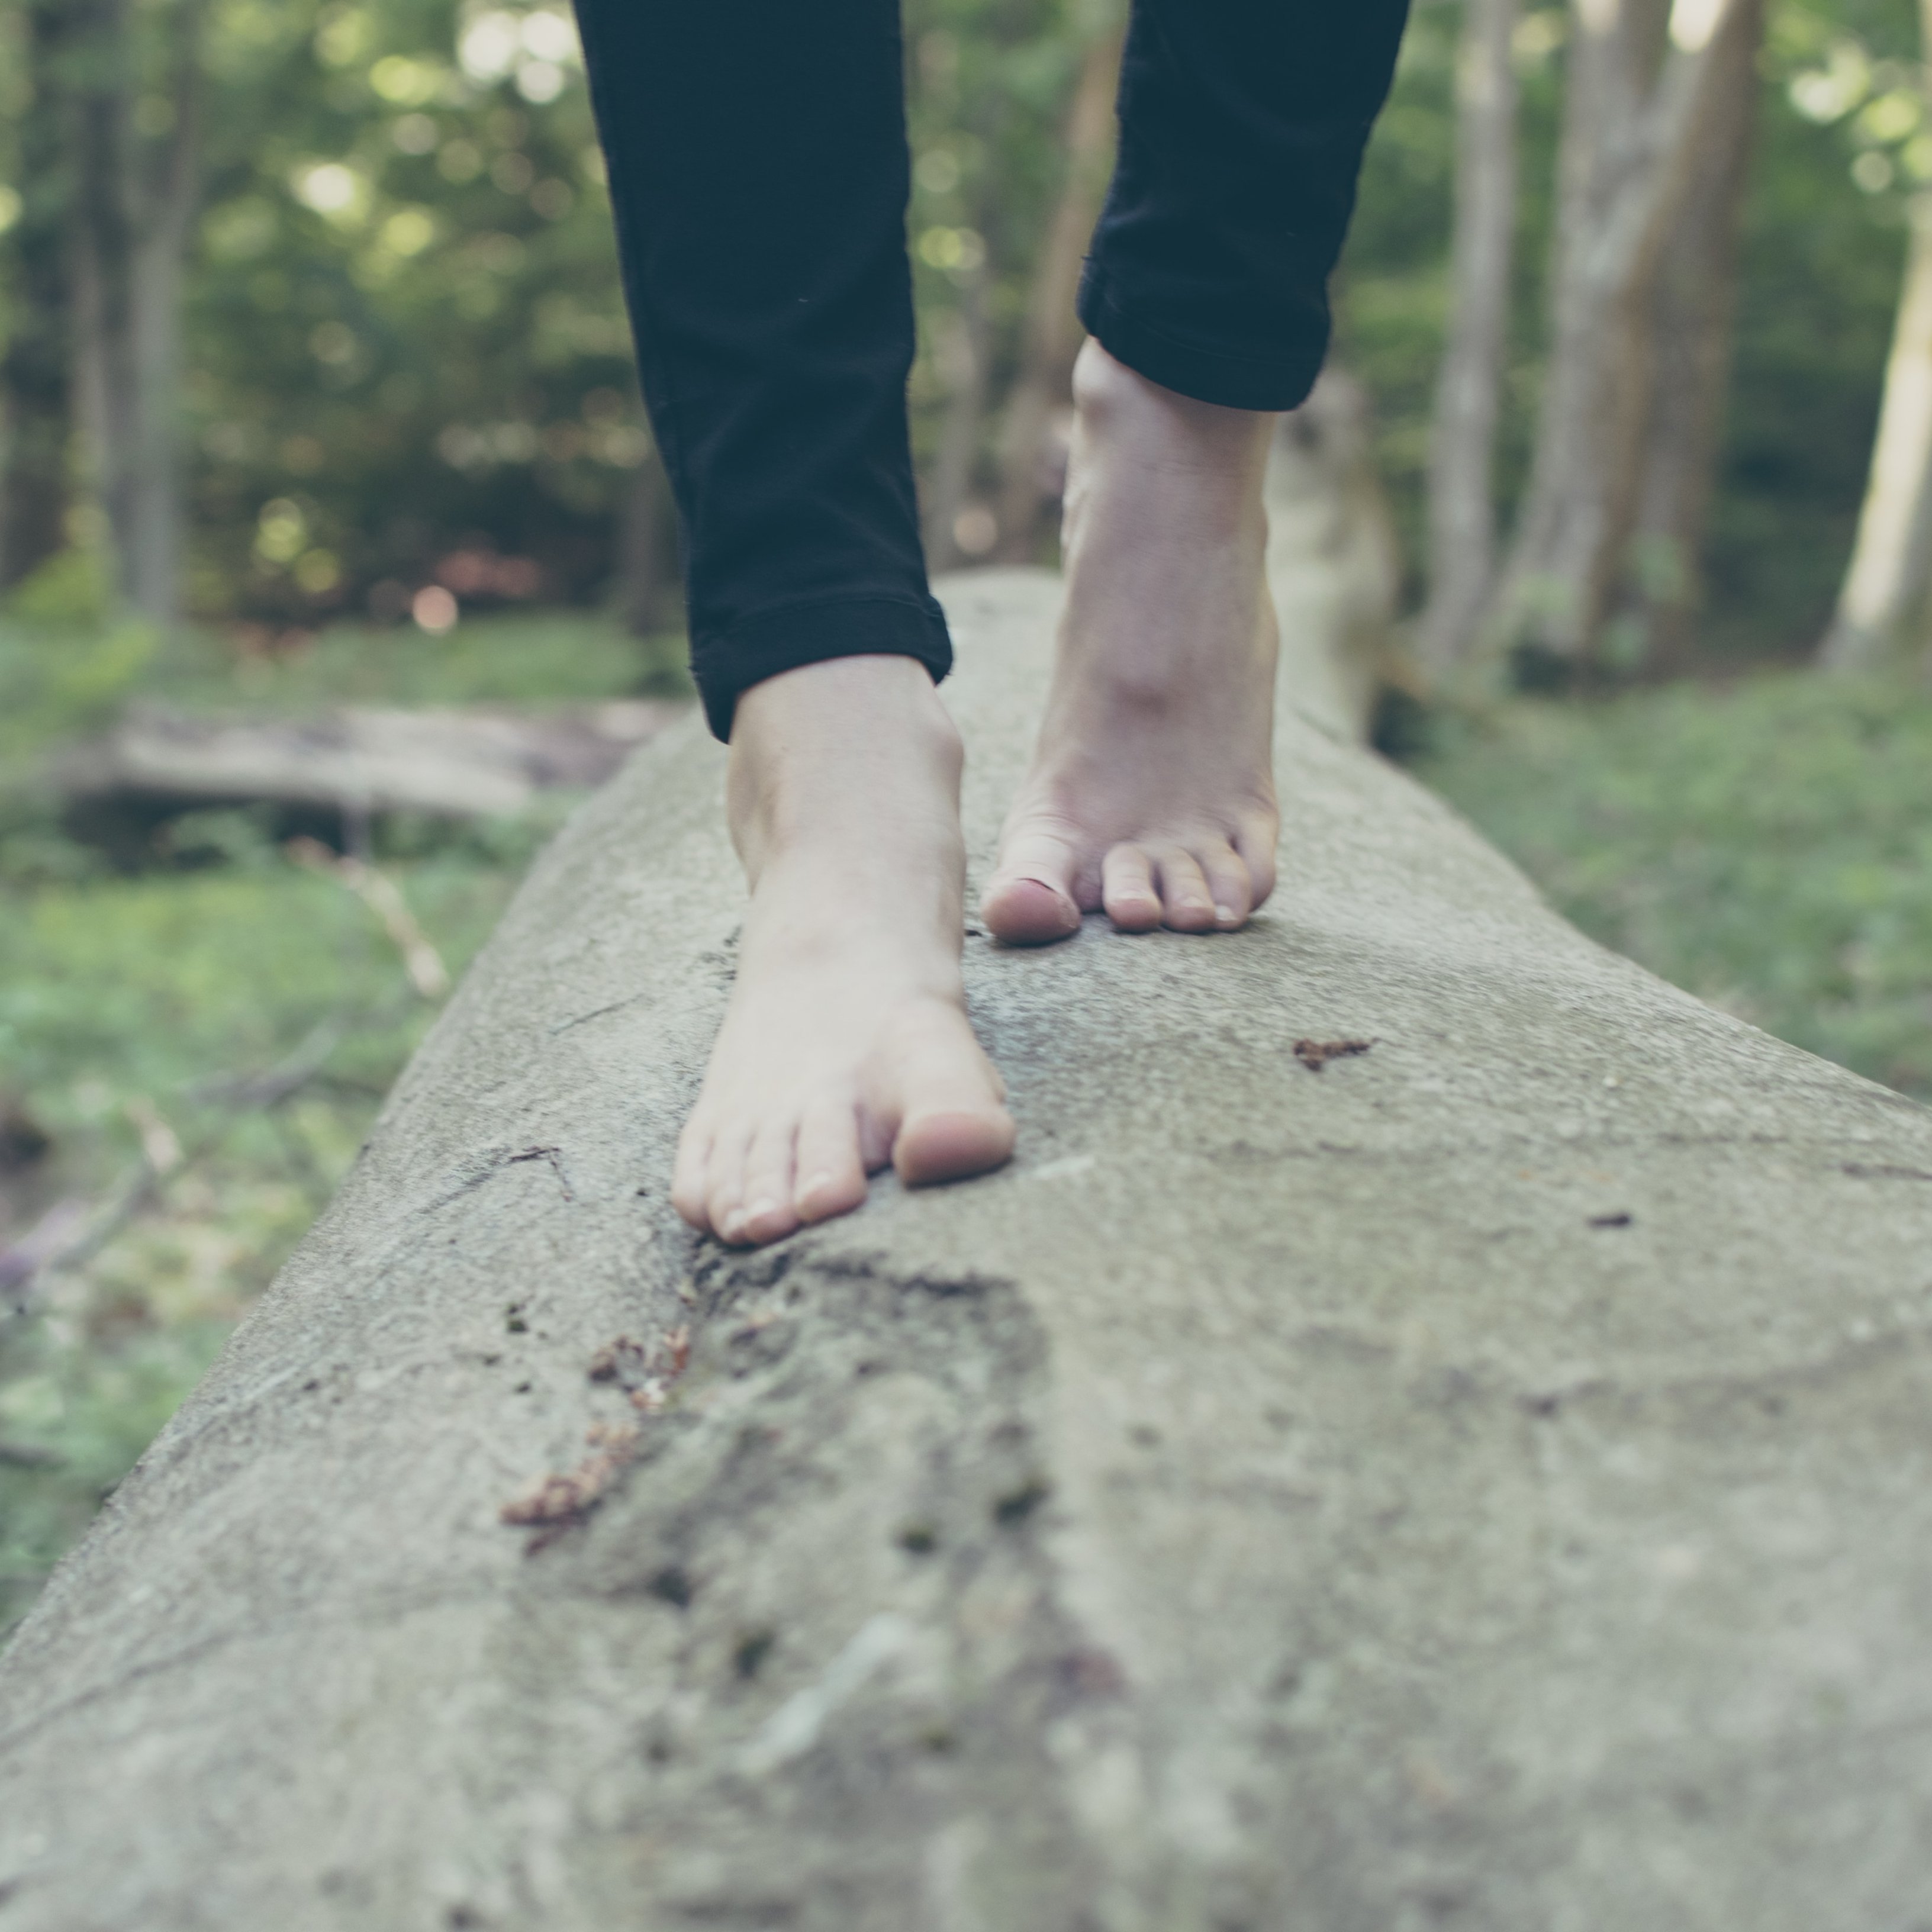 Raons per les quals caminar descalç a l'estiu pot ser perillós